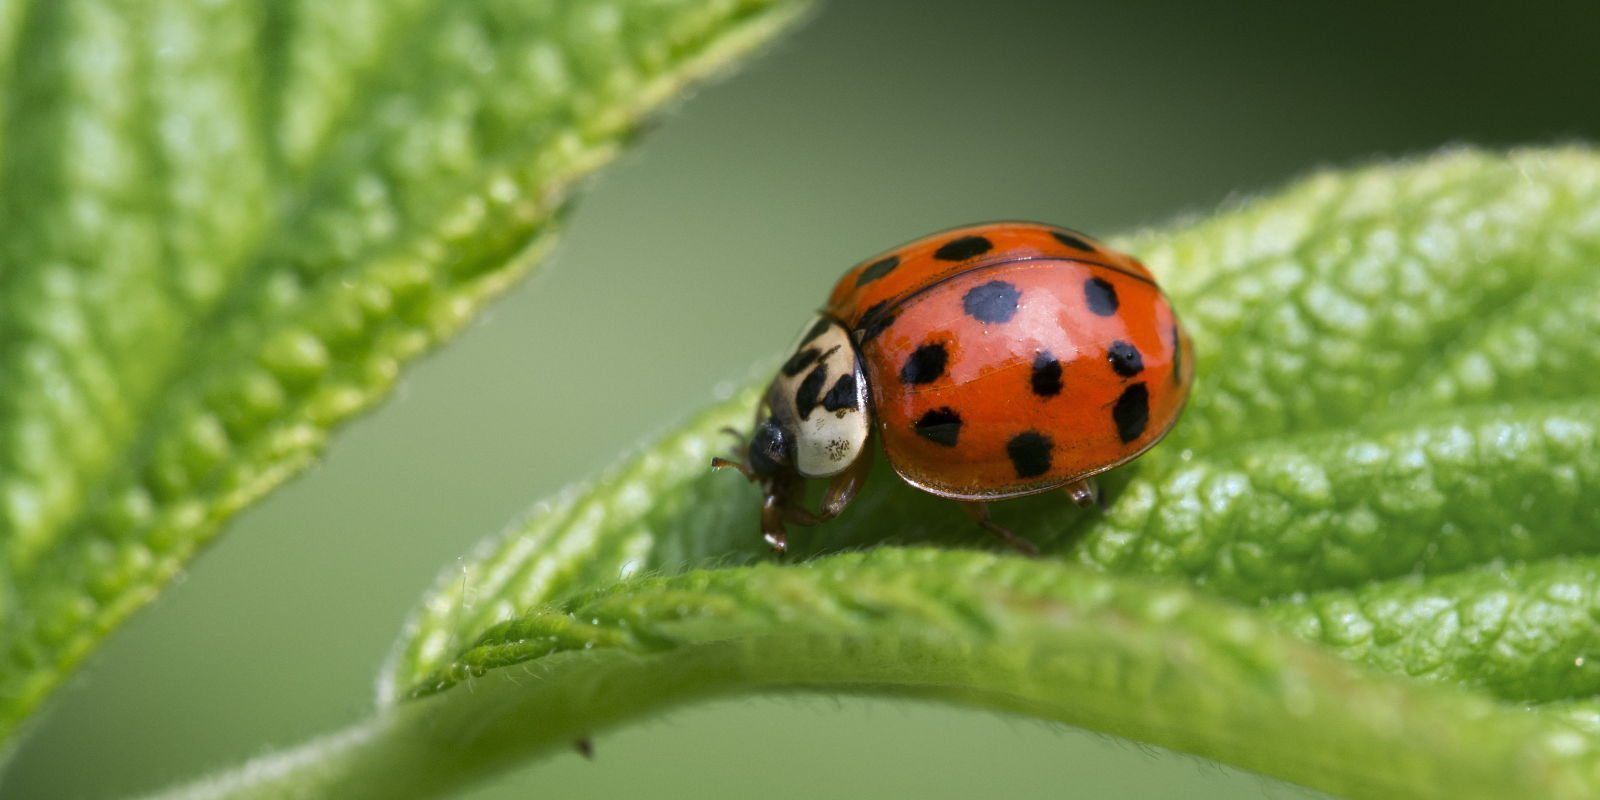 How to kill asian ladybugs